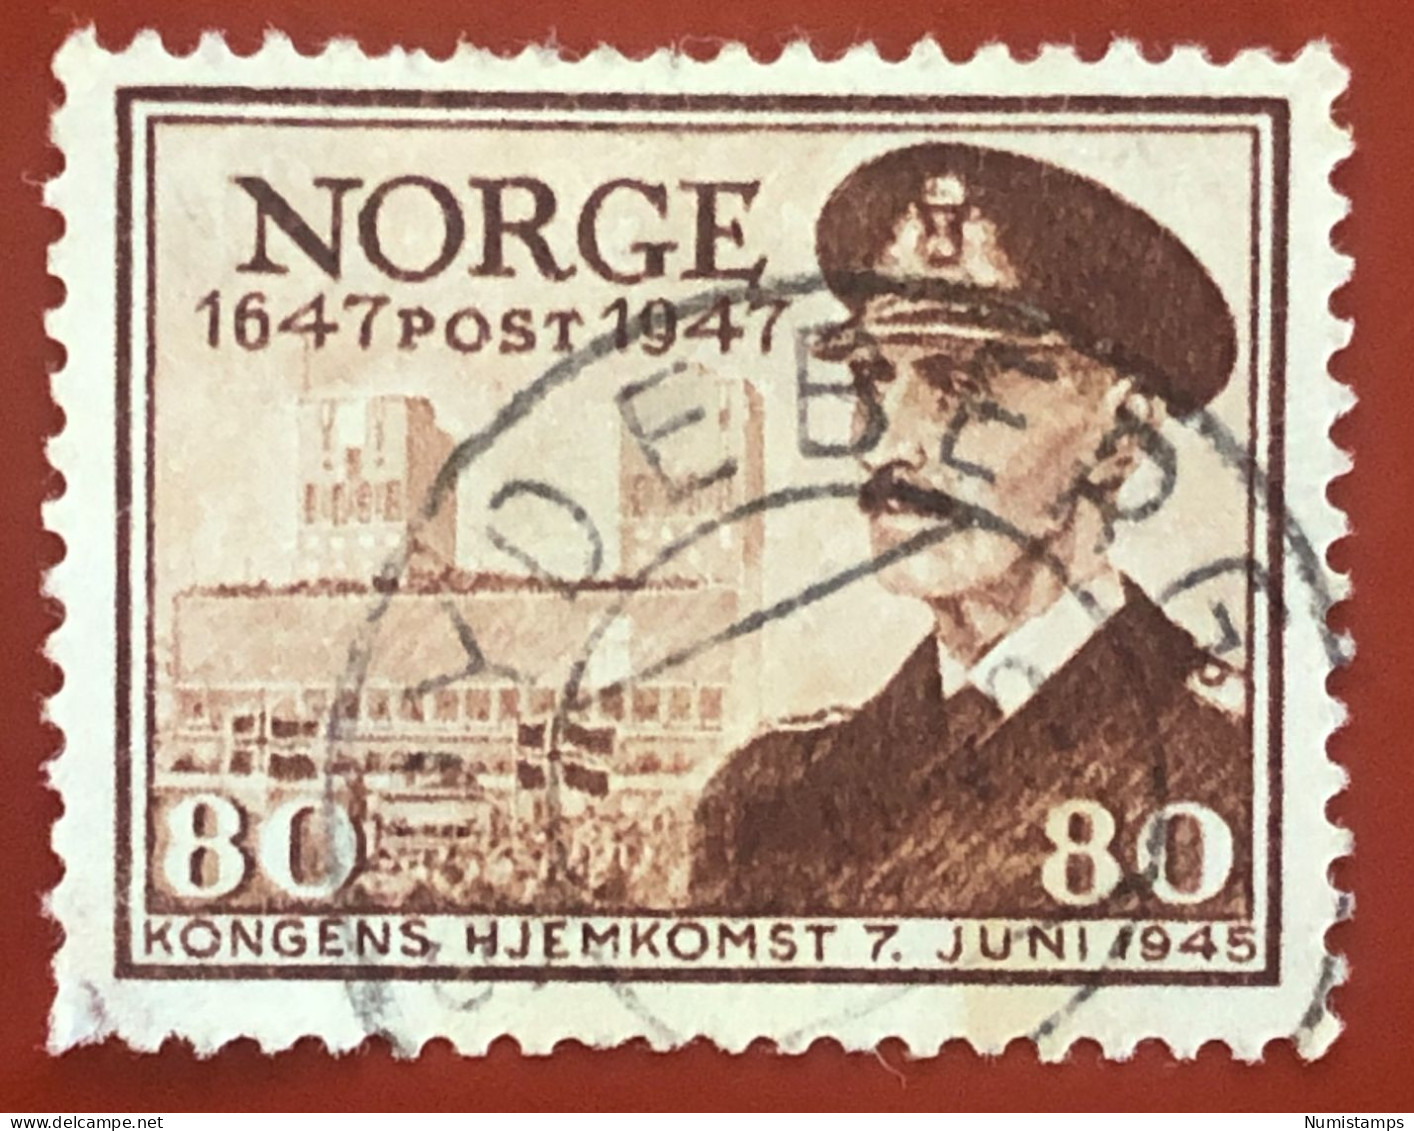 Norway - Postal Service - 1947 - Gebraucht